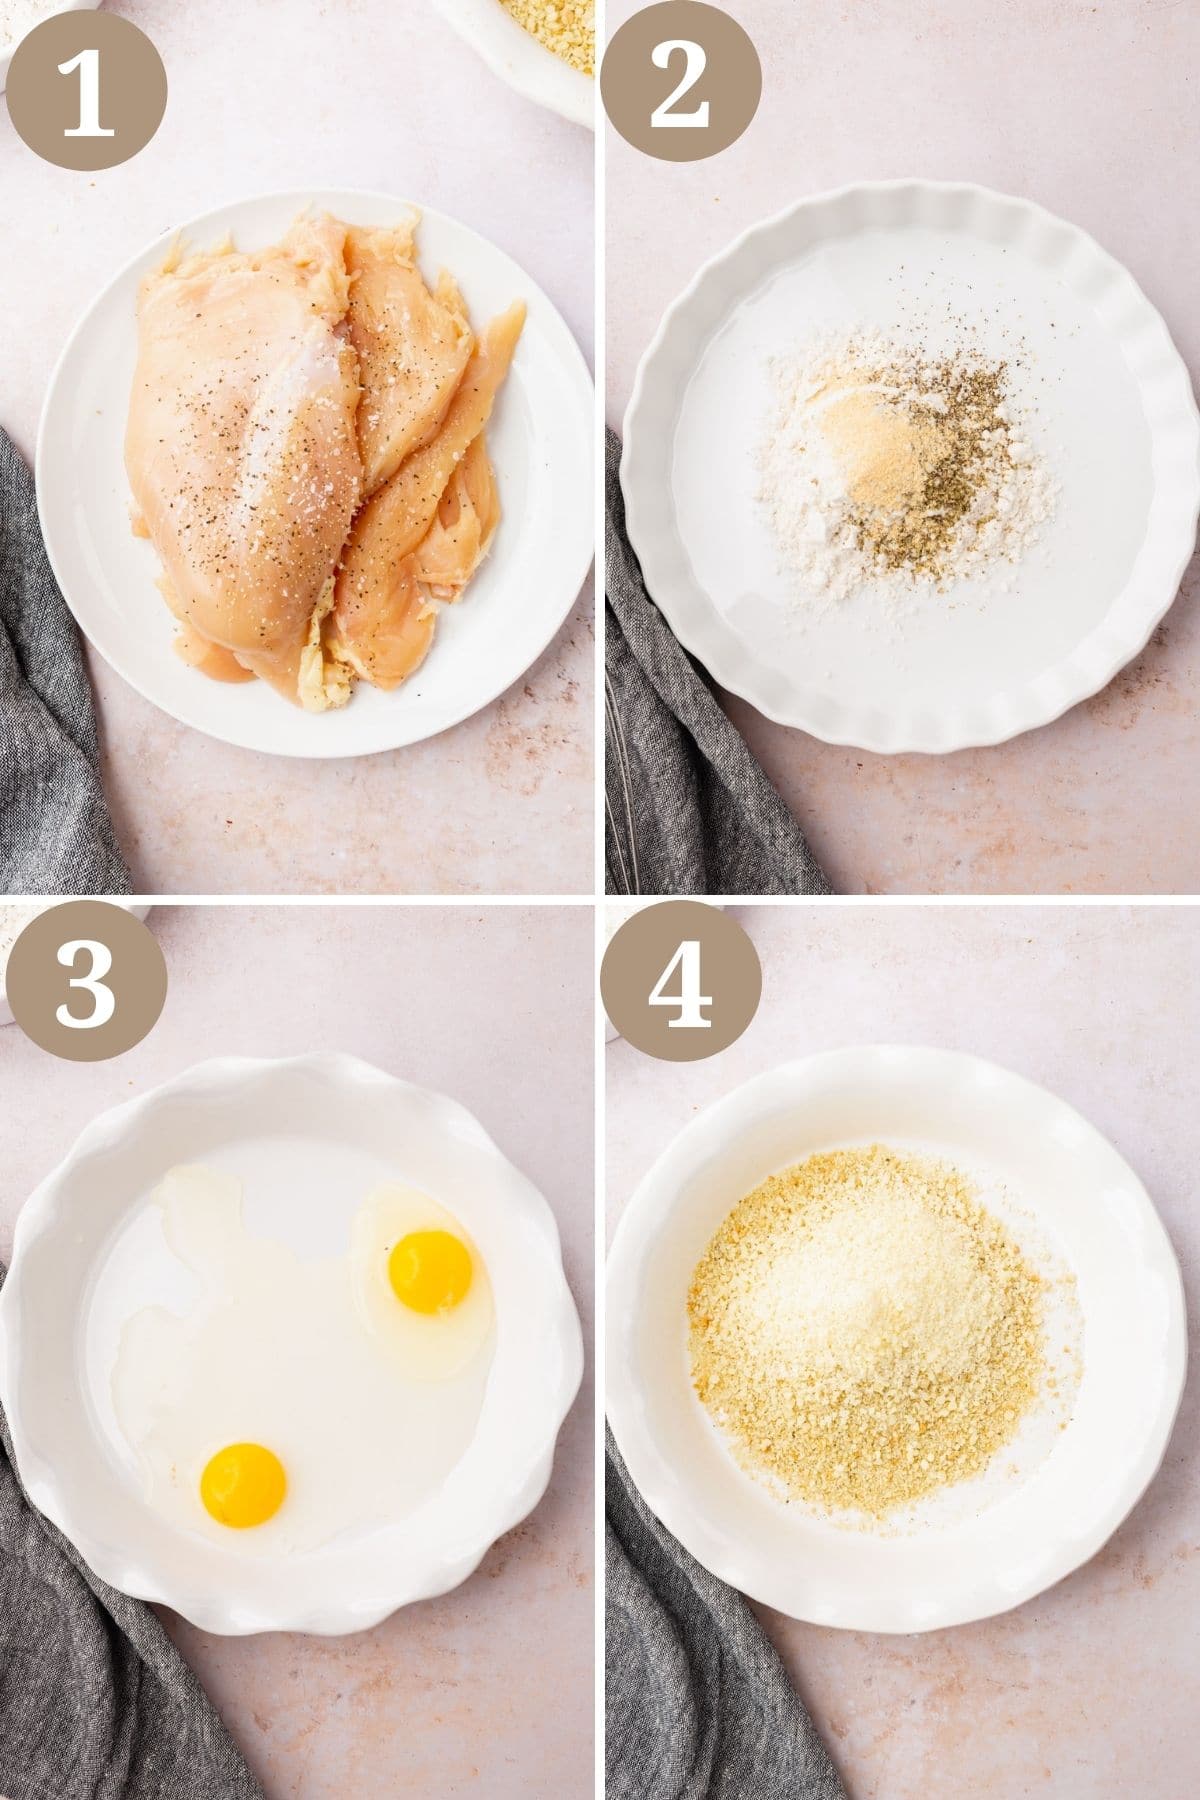 Steps 1-4 for making gluten-free chicken parmesan.